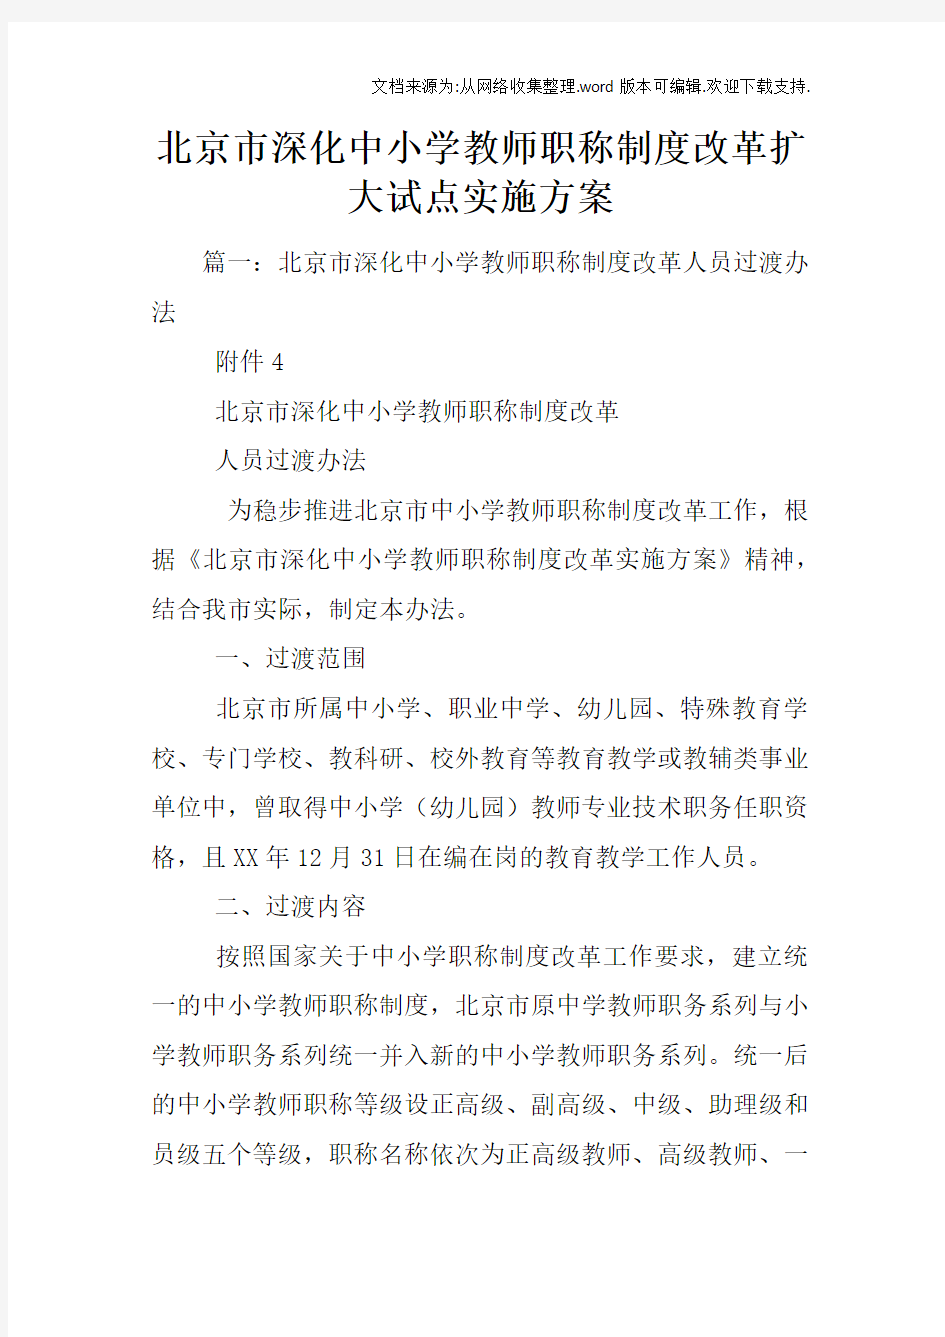 北京市深化中小学教师职称制度改革扩大试点实施方案